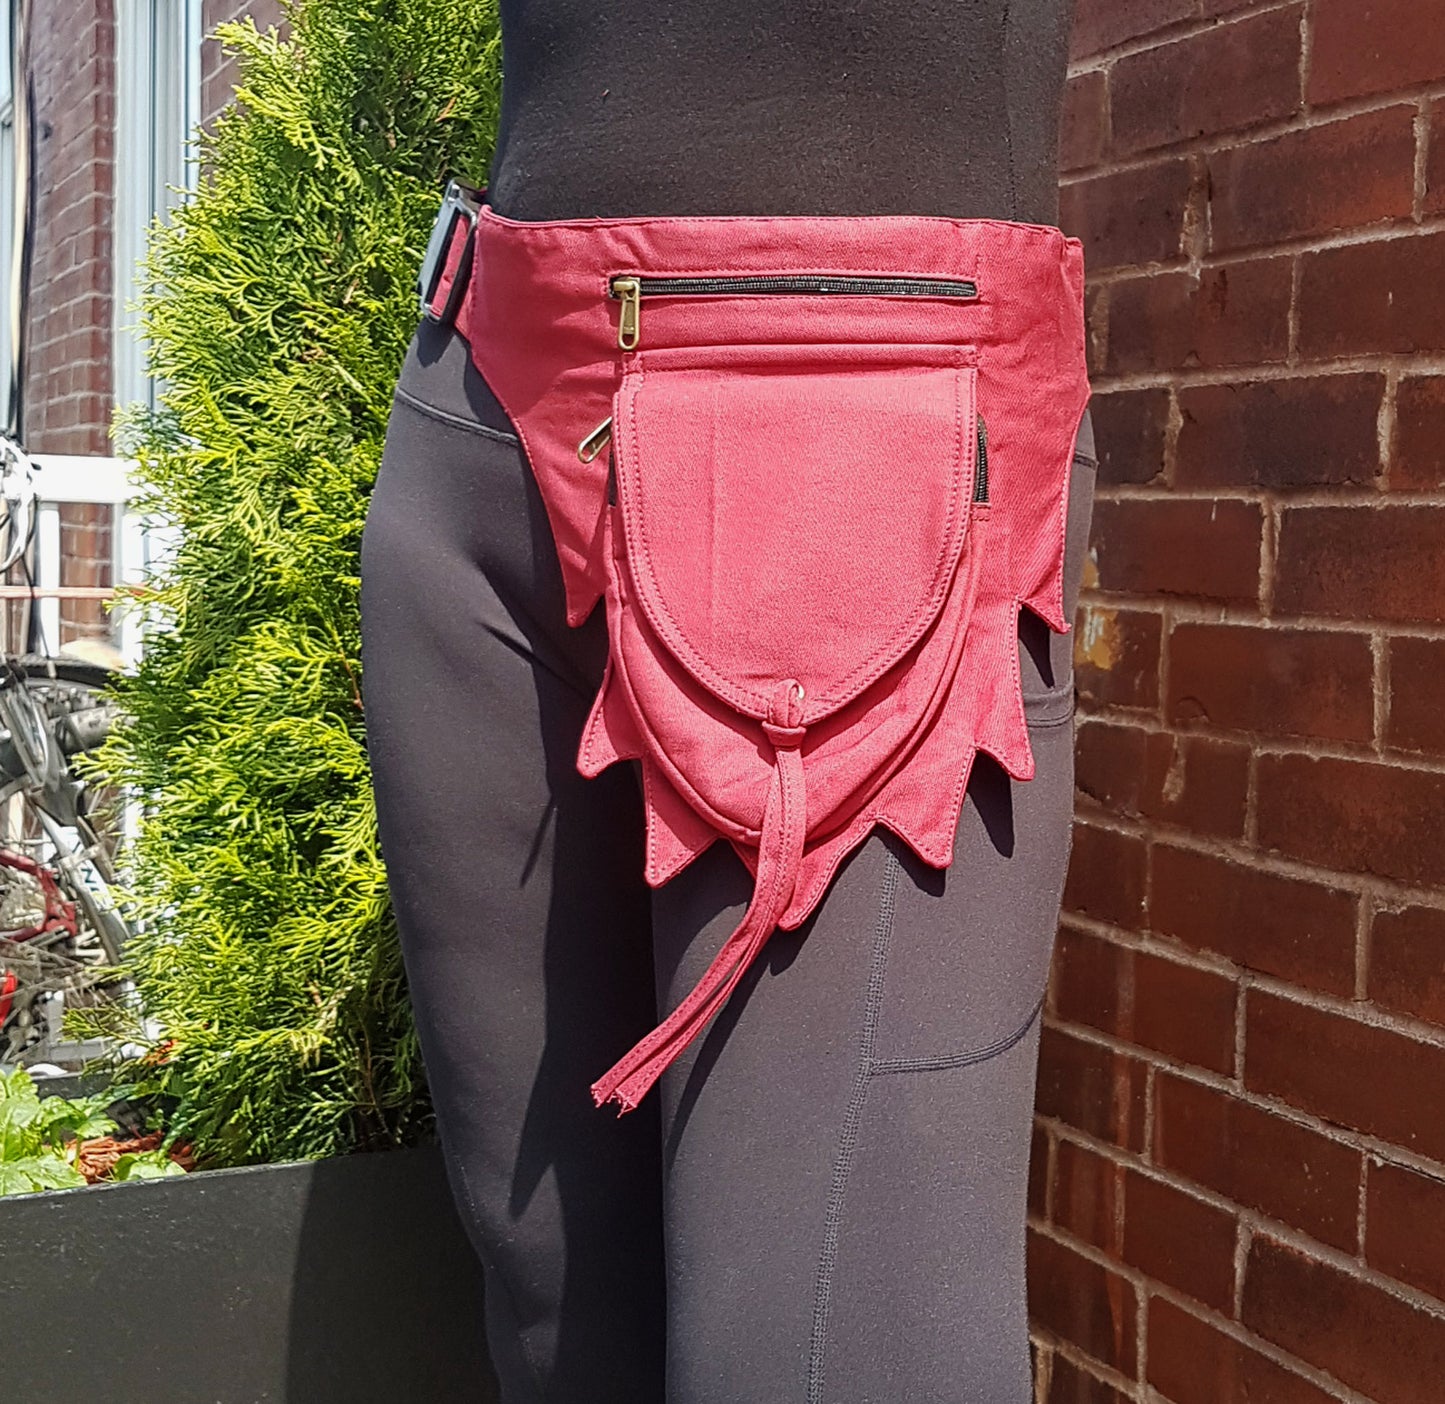 Utility pocket bum bag . Maroon gender neutral festival design. Adjusts to 48 inches. 4 zip pocket money belt for travel, shopping, concerts, raves.